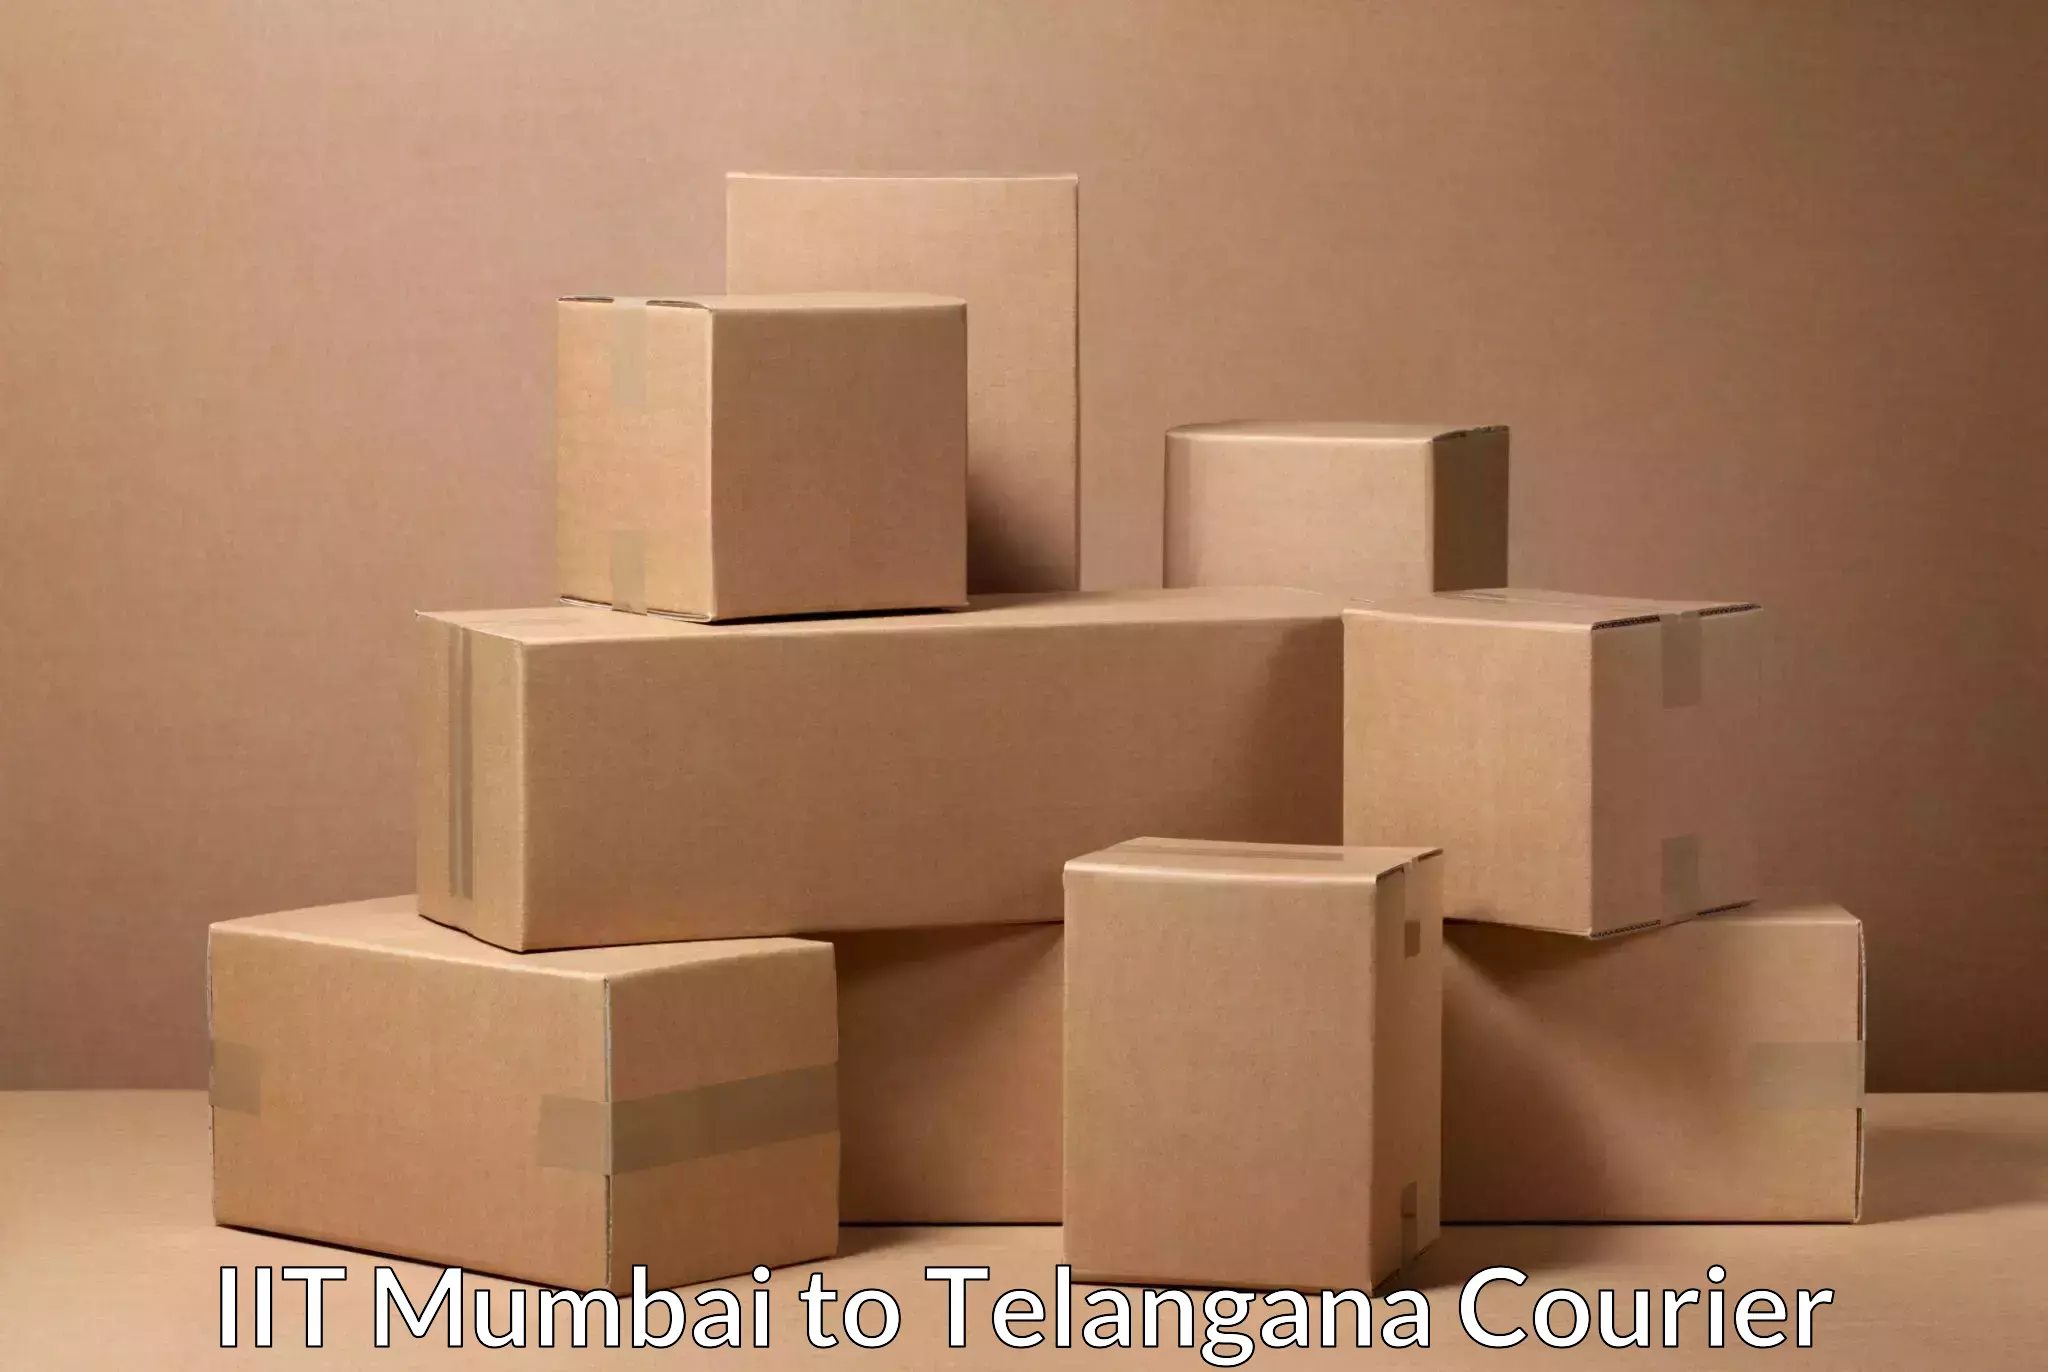 Individual parcel service IIT Mumbai to Bijinapalle